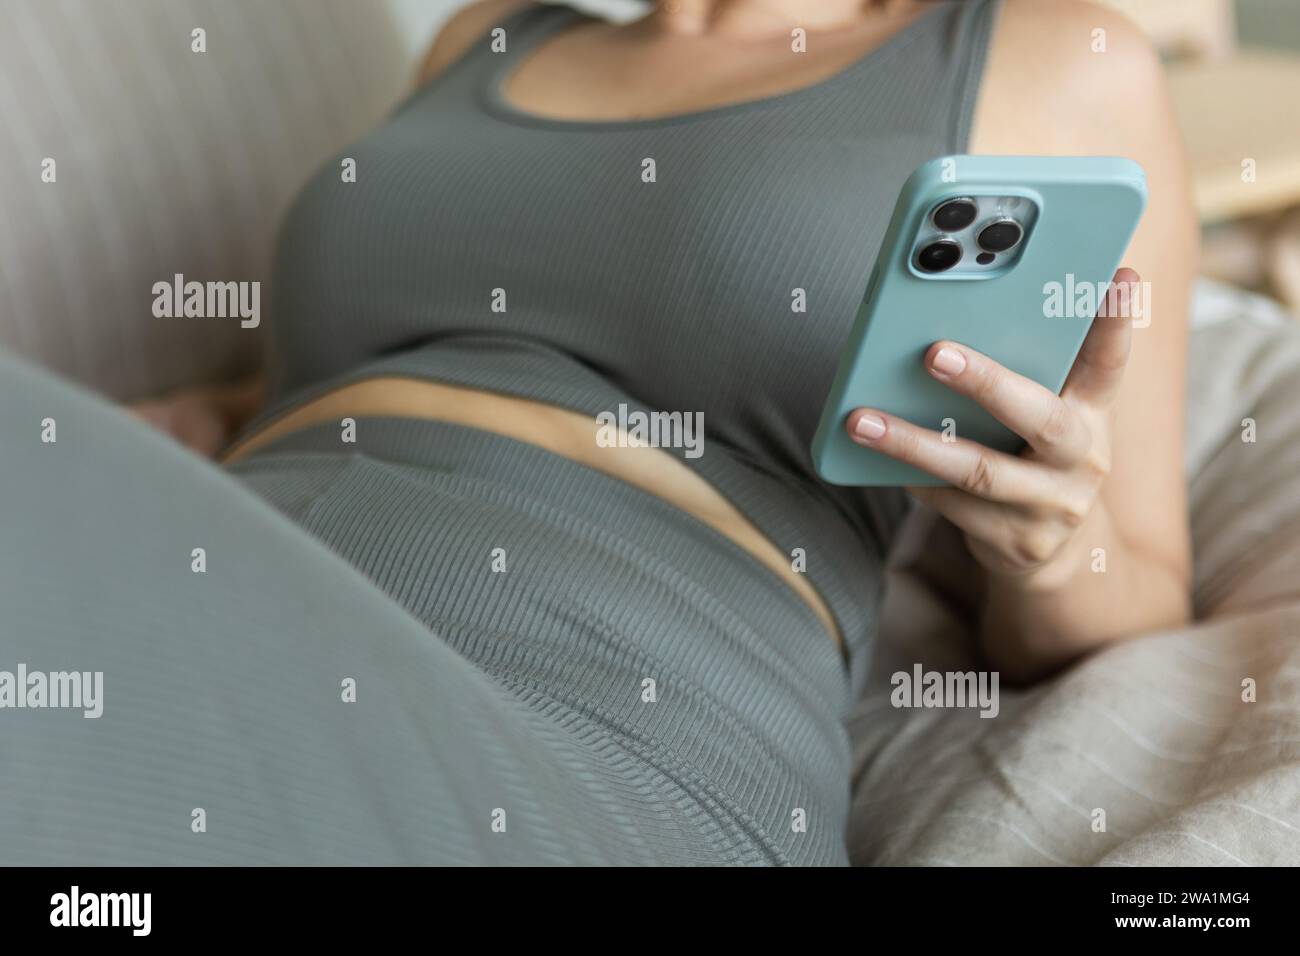 La donna scorre sullo smartphone mentre si rilassa in un set coordinato estetico Foto Stock